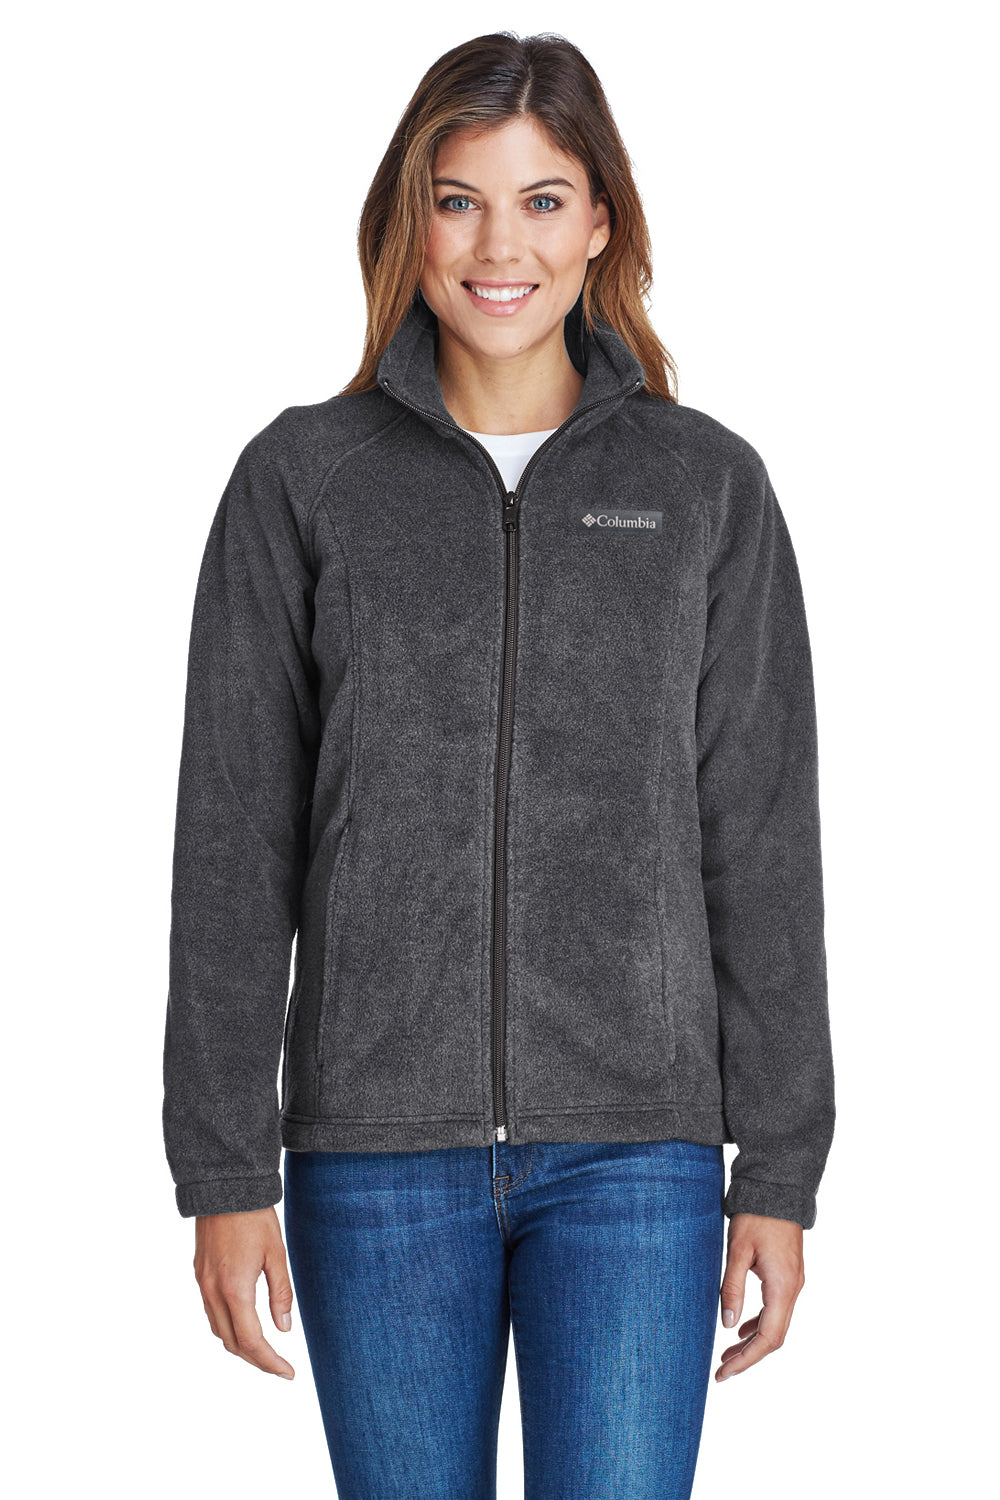 Columbia 6439 Womens Benton Springs Full Zip Fleece Jacket Charcoal Grey Front